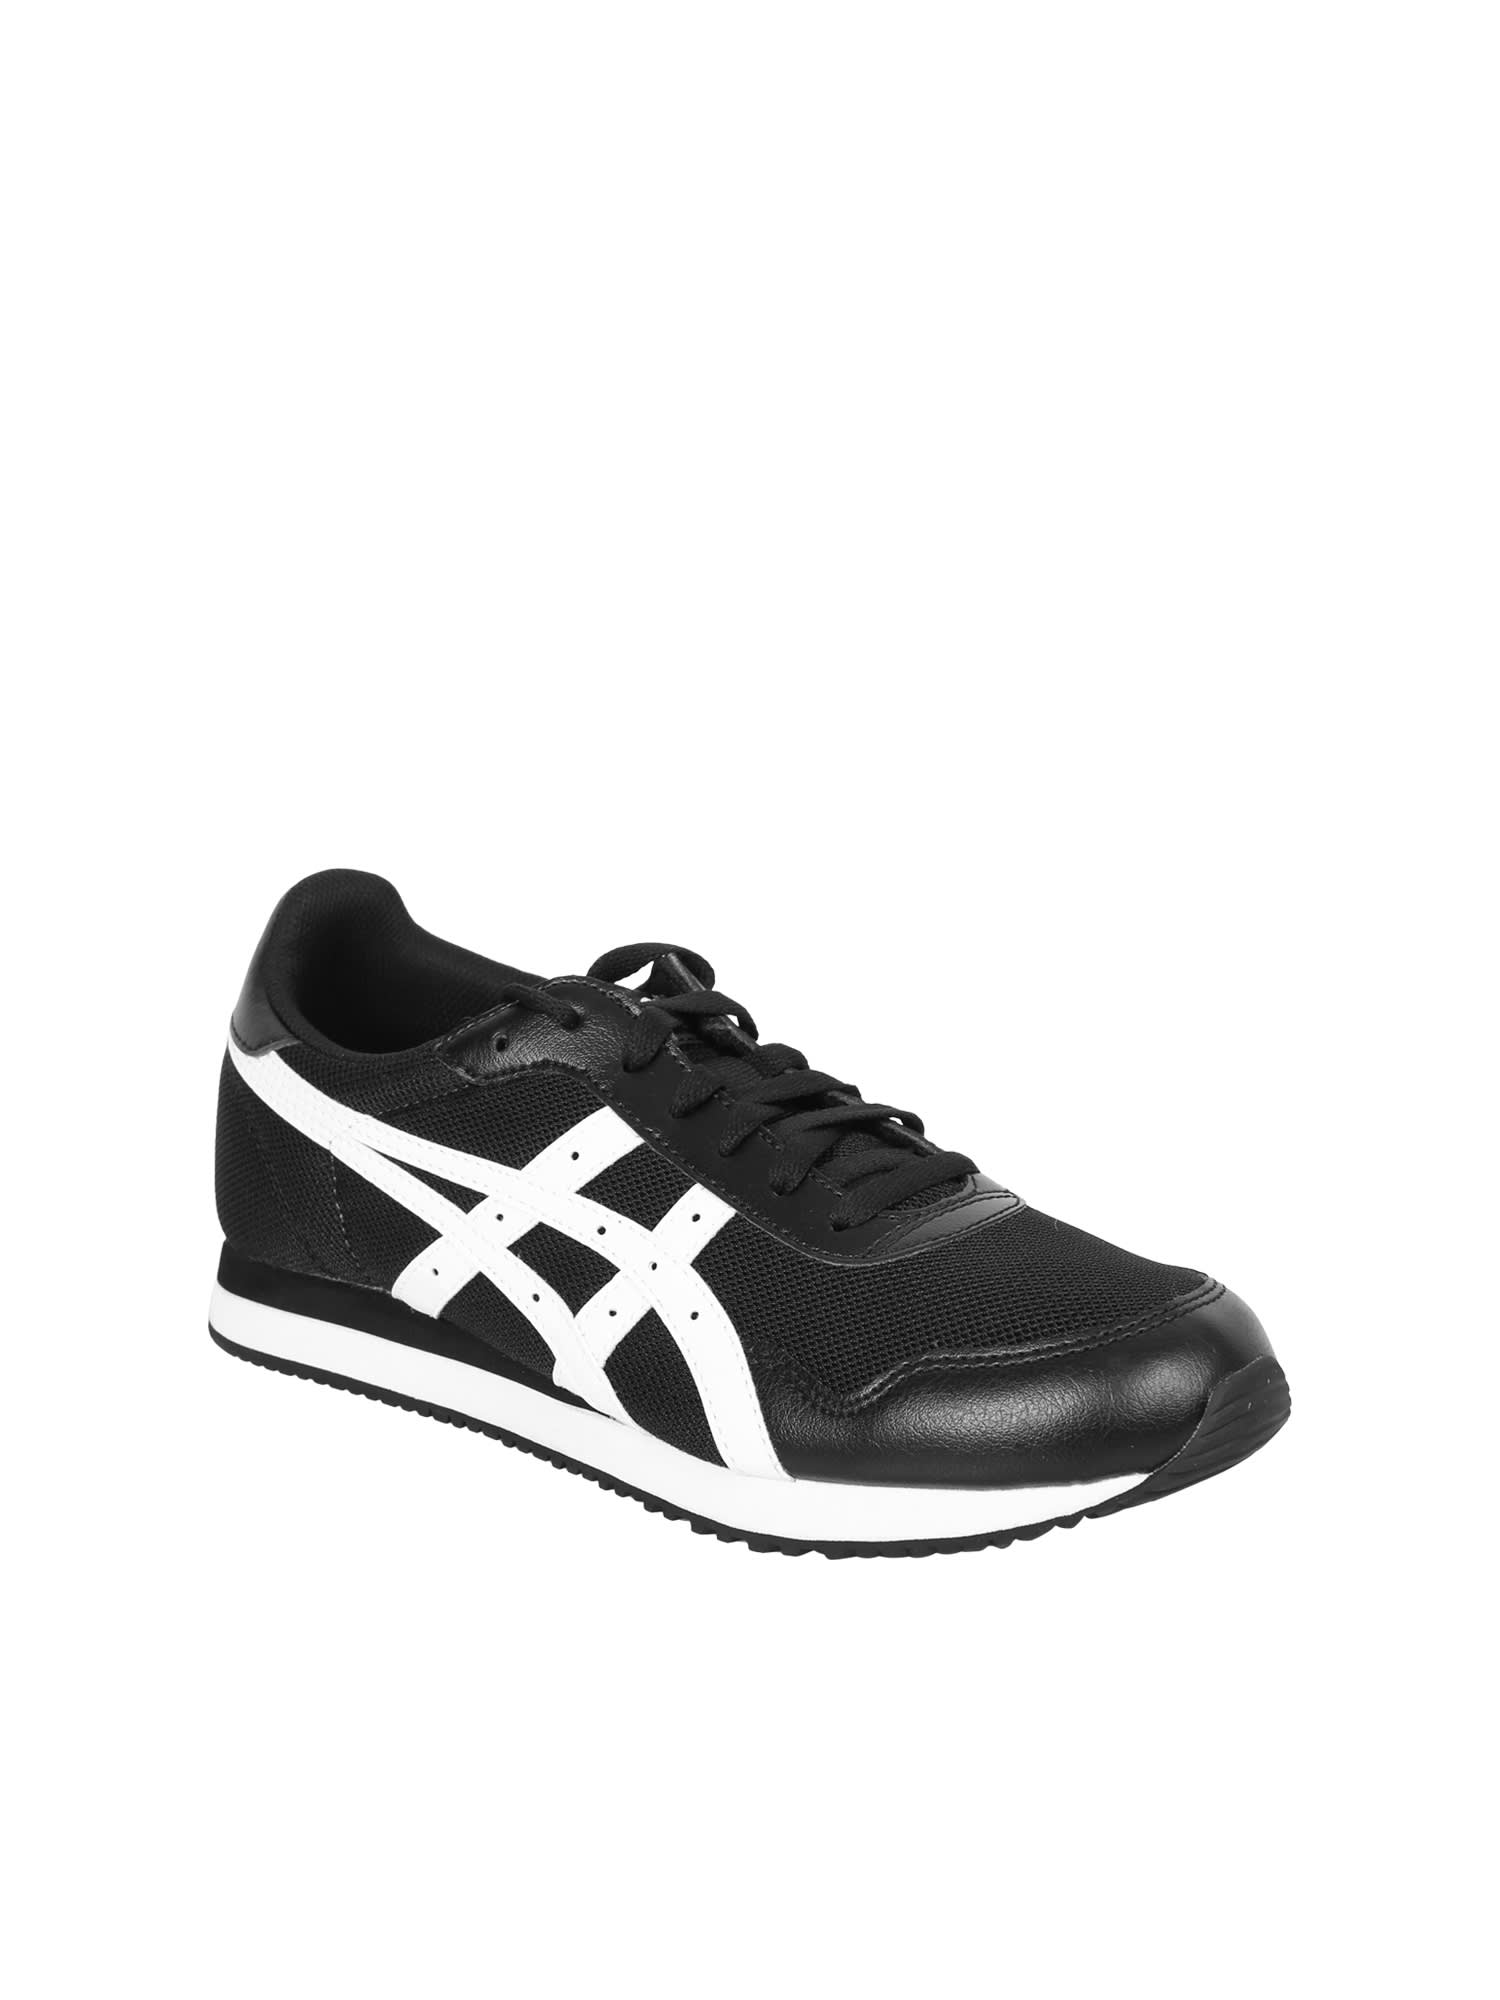 Shop Asics Black/ White Tiger Runner Sneakers